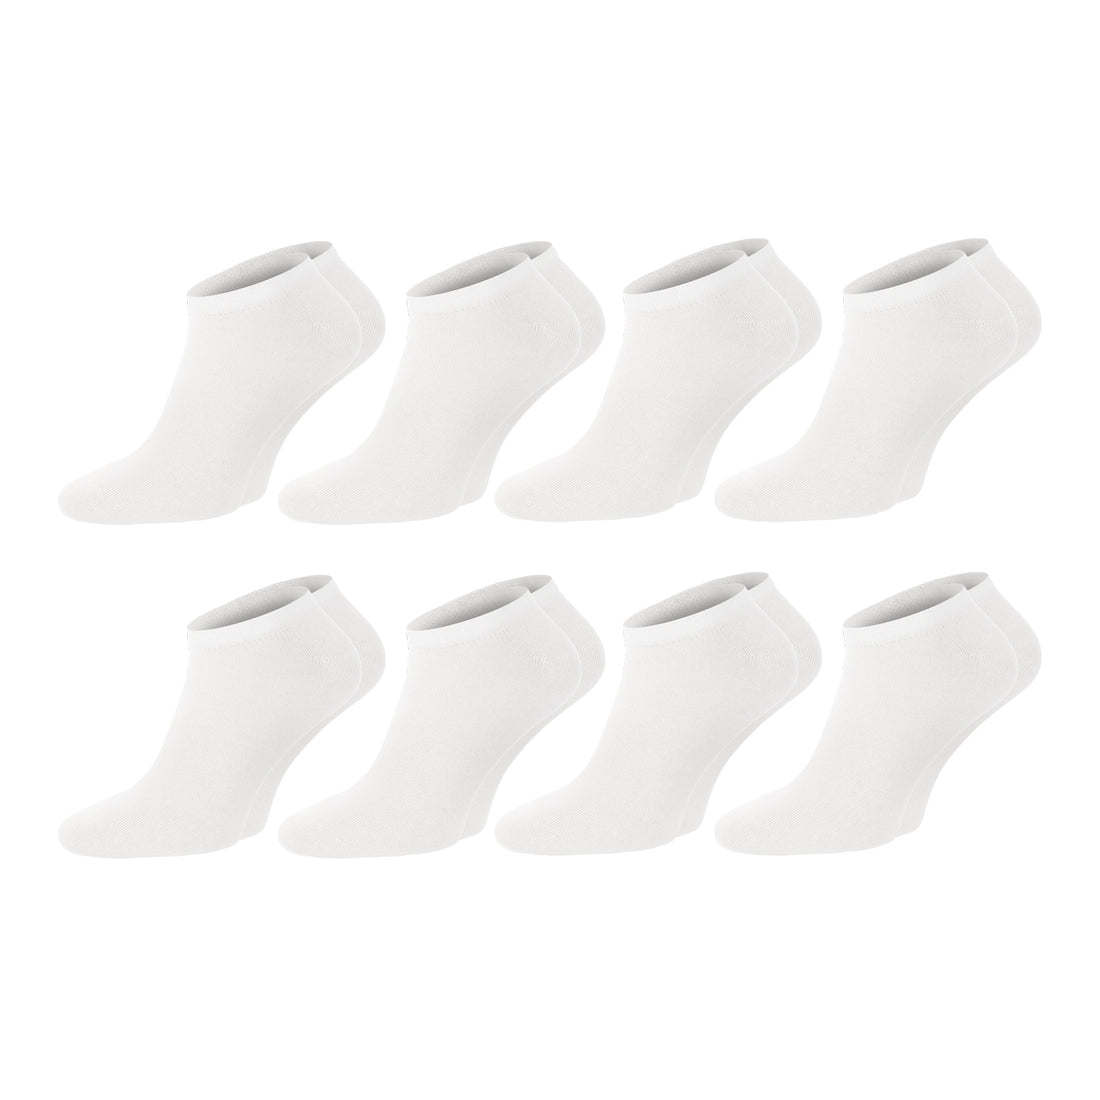 ChiliLifestyle Sneaker Weiß, 8 Paar, für Damen und Herren, Freizeit